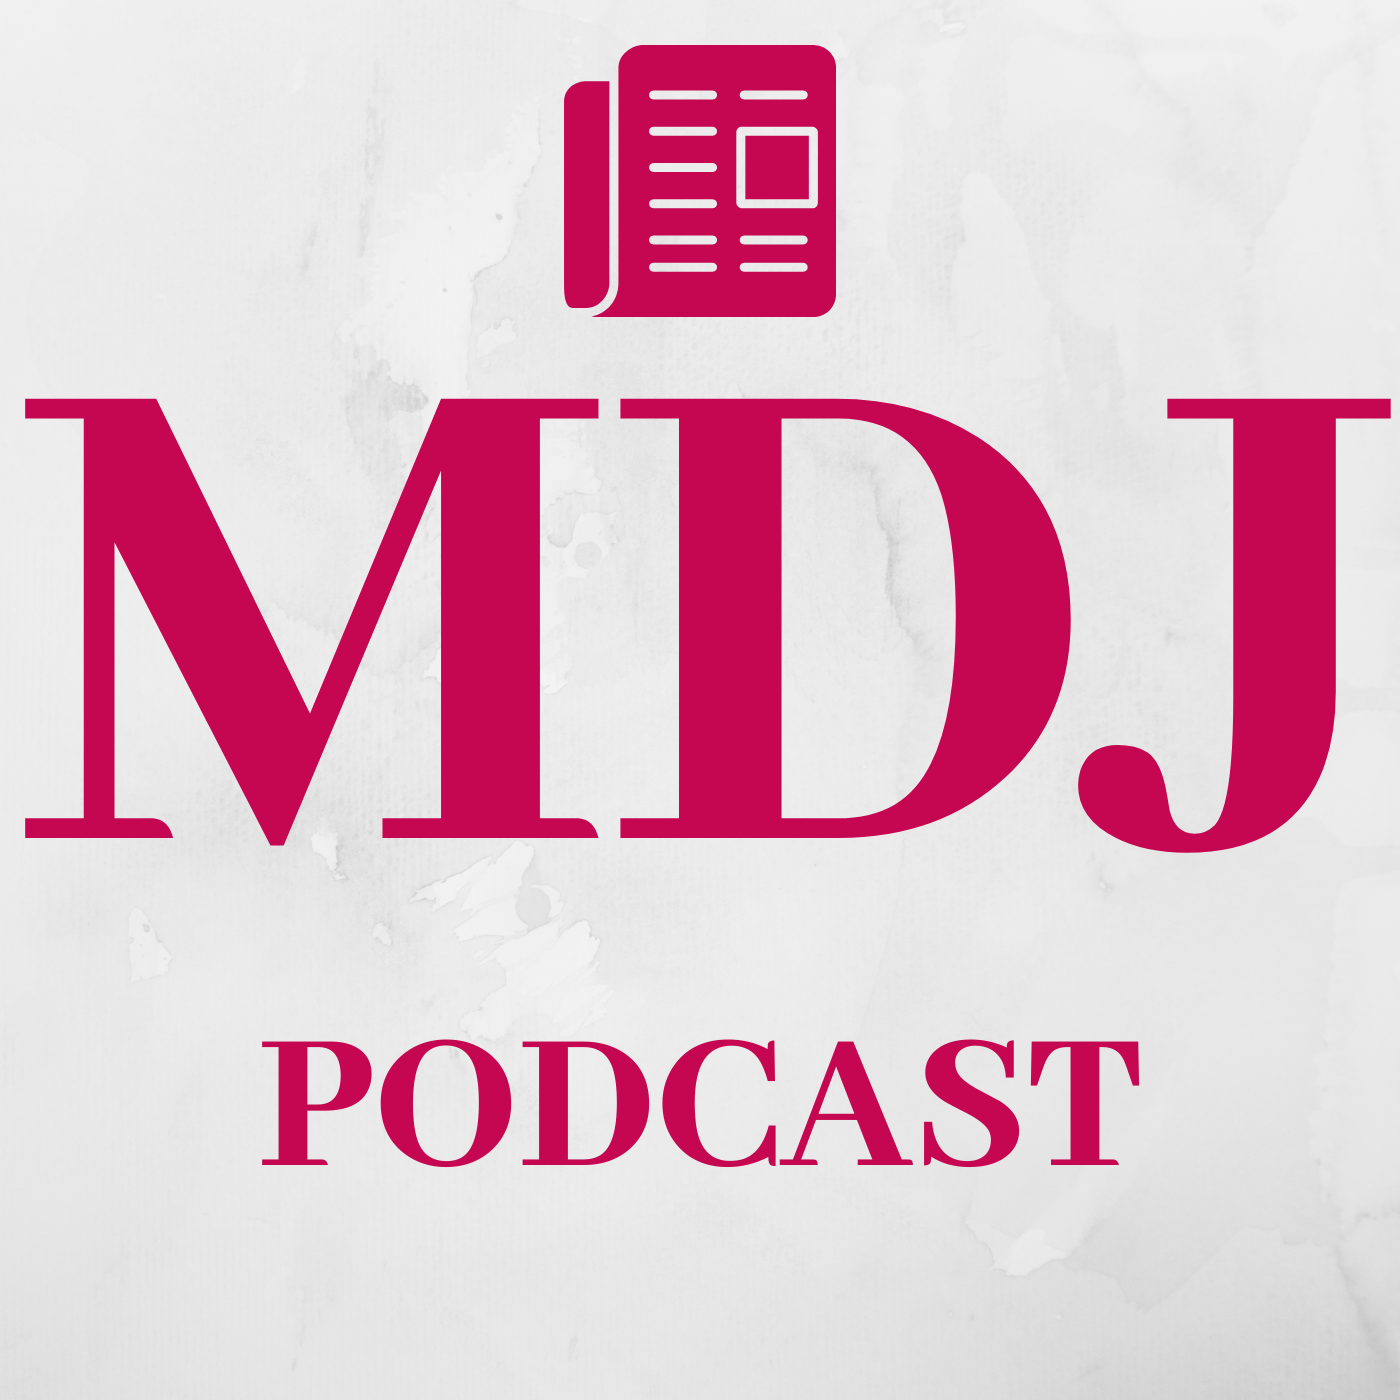 A Sneak Peek at Tomorrow's MDJ Podcast Stories